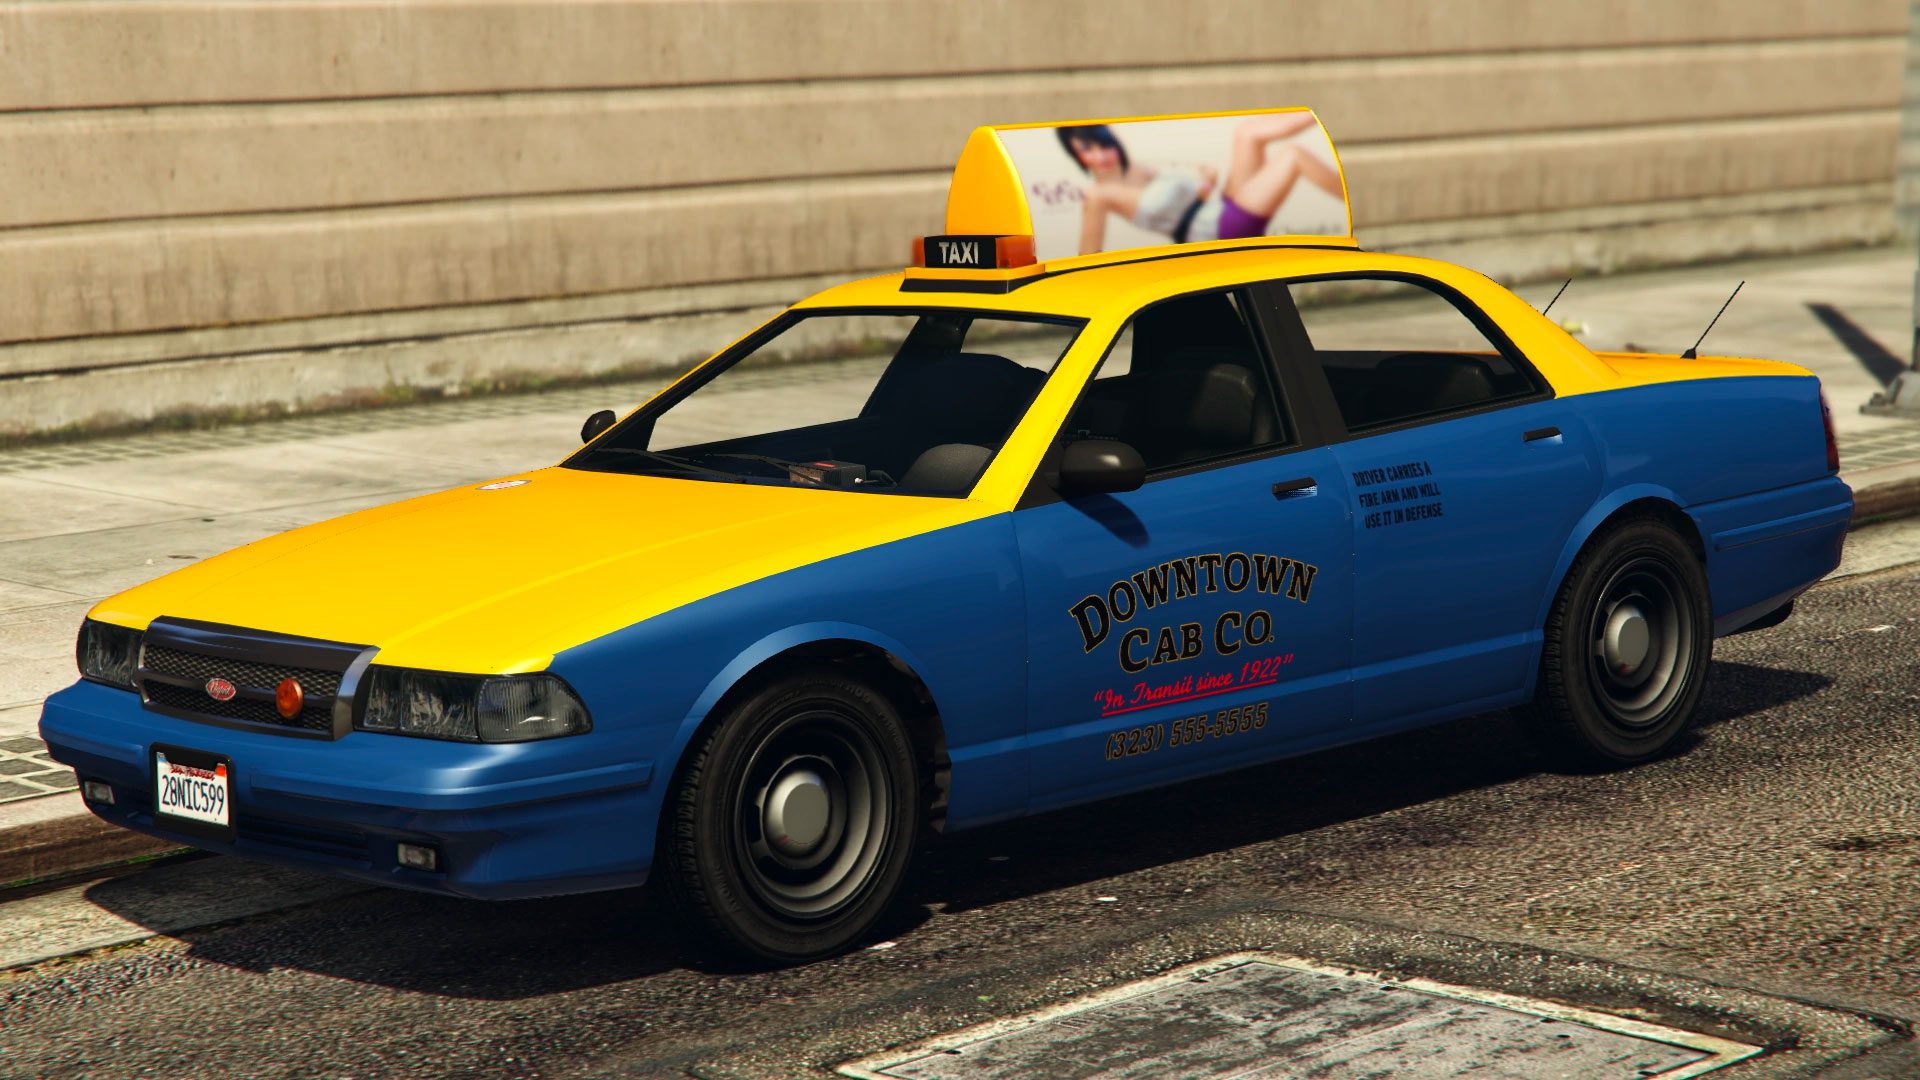 žlto-modrý taxík z hry GTA 5